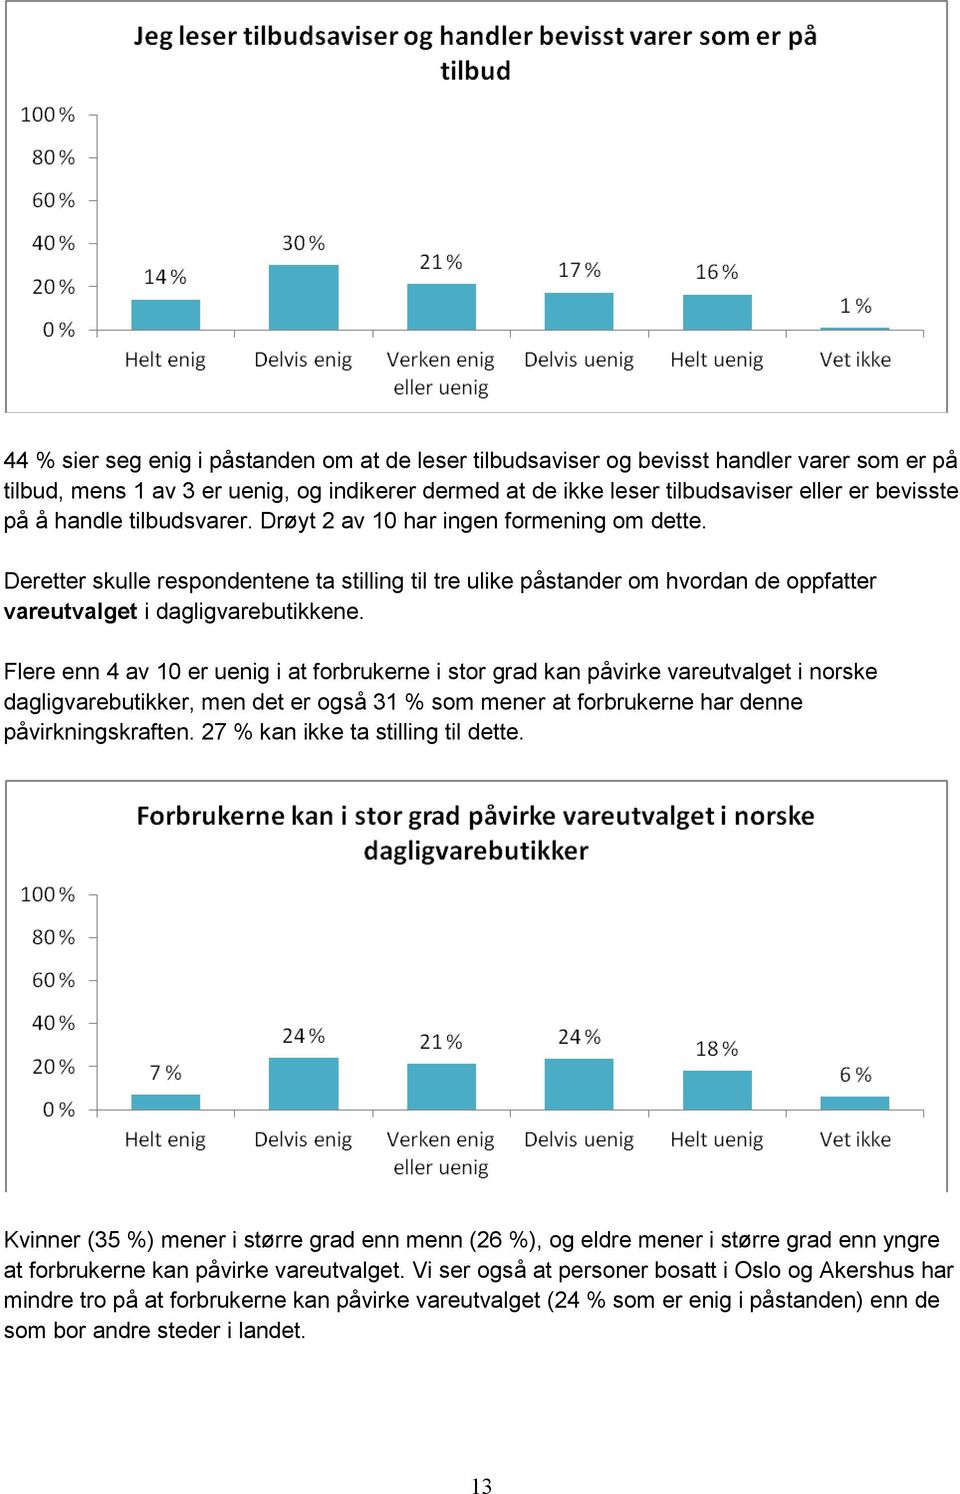 Flere enn 4 av 10 er uenig i at forbrukerne i stor grad kan påvirke vareutvalget i norske dagligvarebutikker, men det er også 31 % som mener at forbrukerne har denne påvirkningskraften.